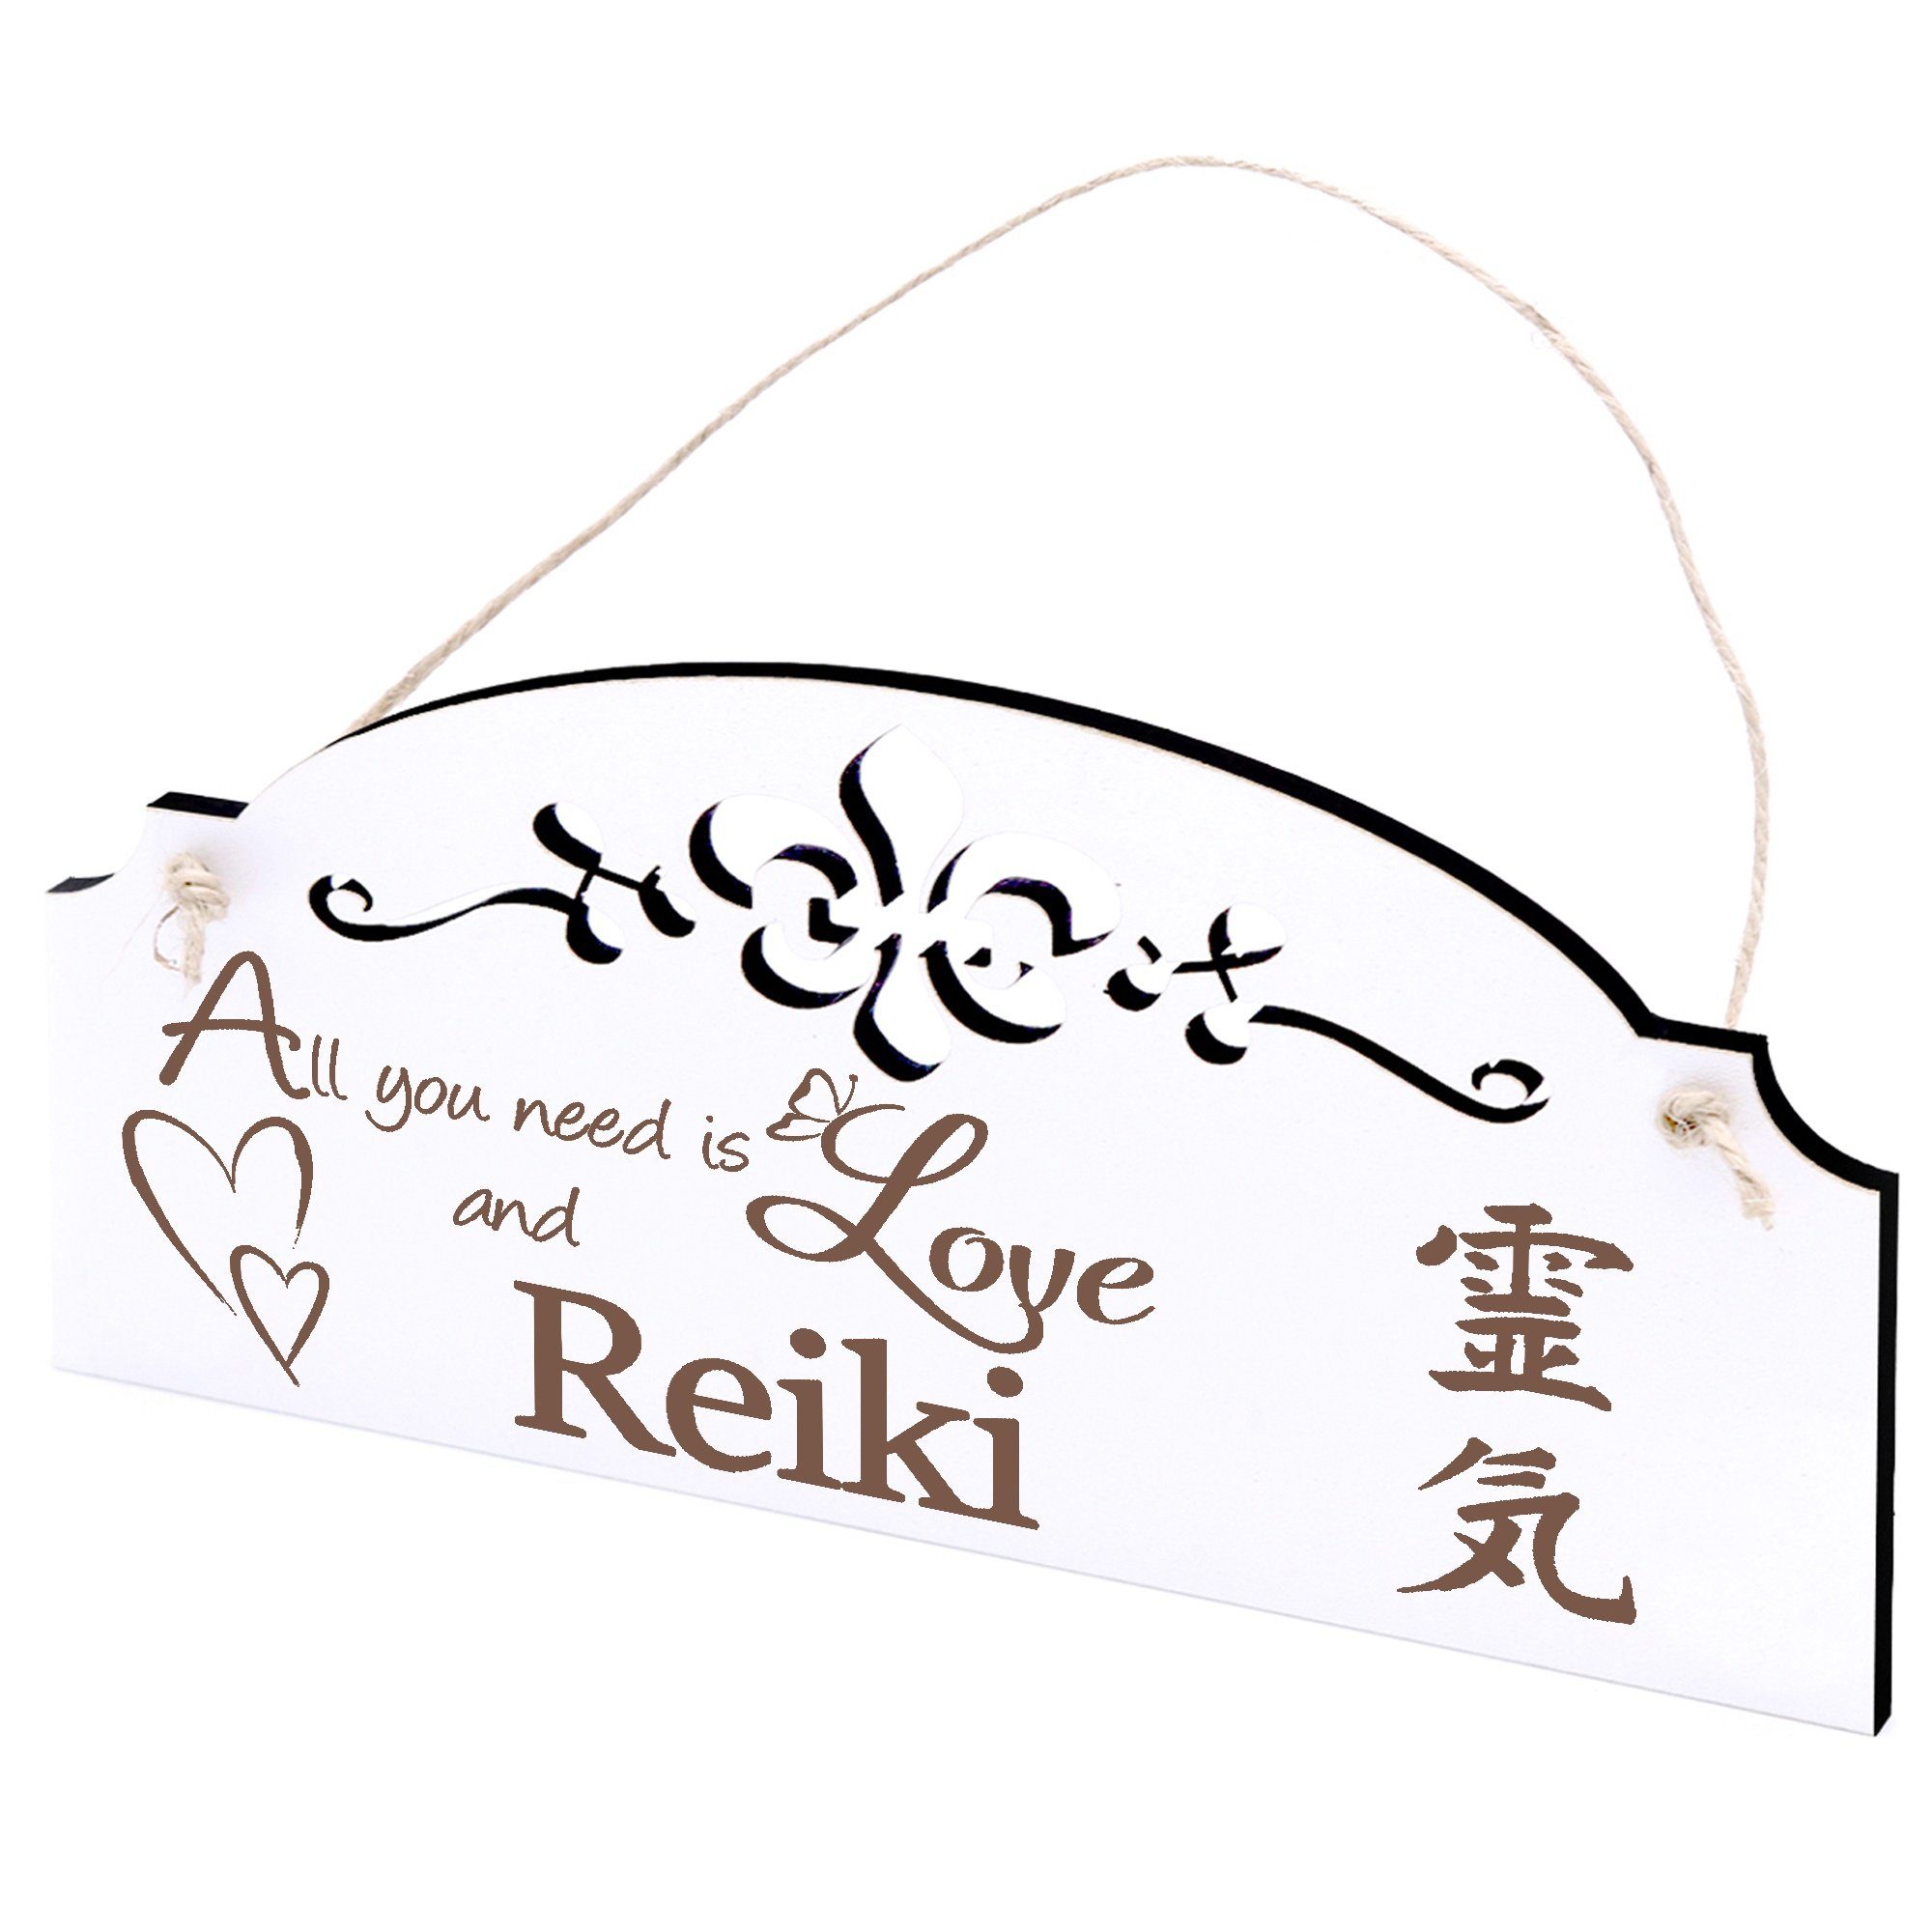 Deko All you Reiki is need Hängedekoration 20x10cm Love Dekolando